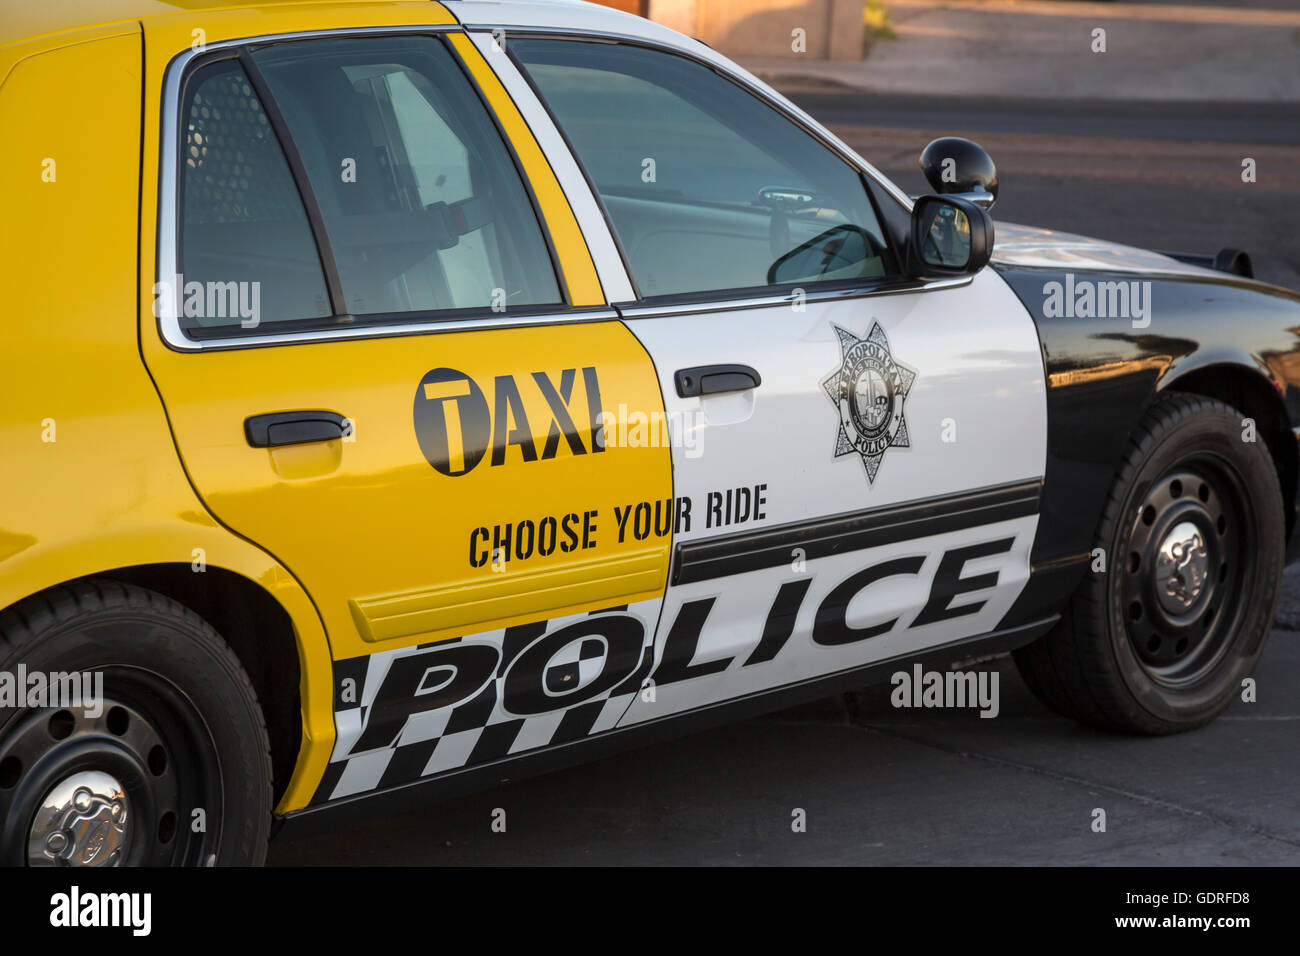 Las Vegas, Nevada - ein Polizeiauto als ein Taxi, Teil einer Kampagne gegen Alkohol am Steuer teilweise bemalt. Stockfoto